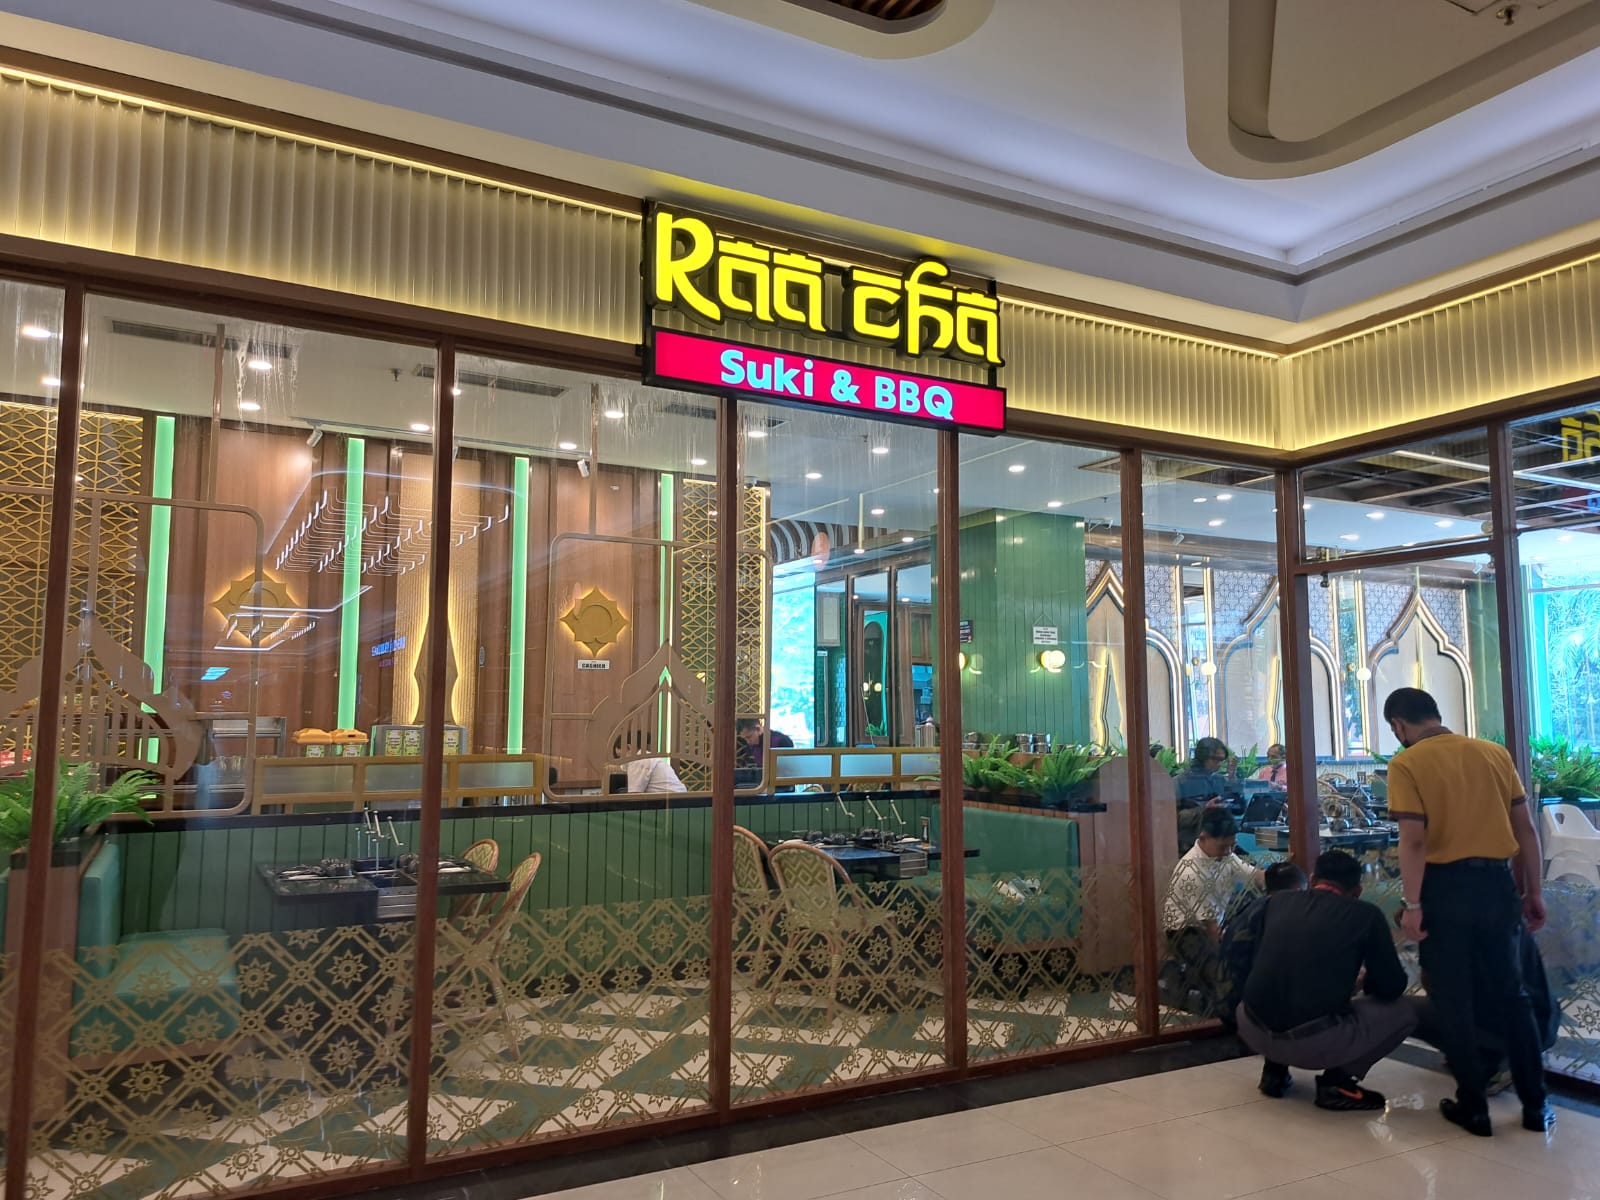 Resto Raacha Hadir di PIM, Sediakan Aneka Suki